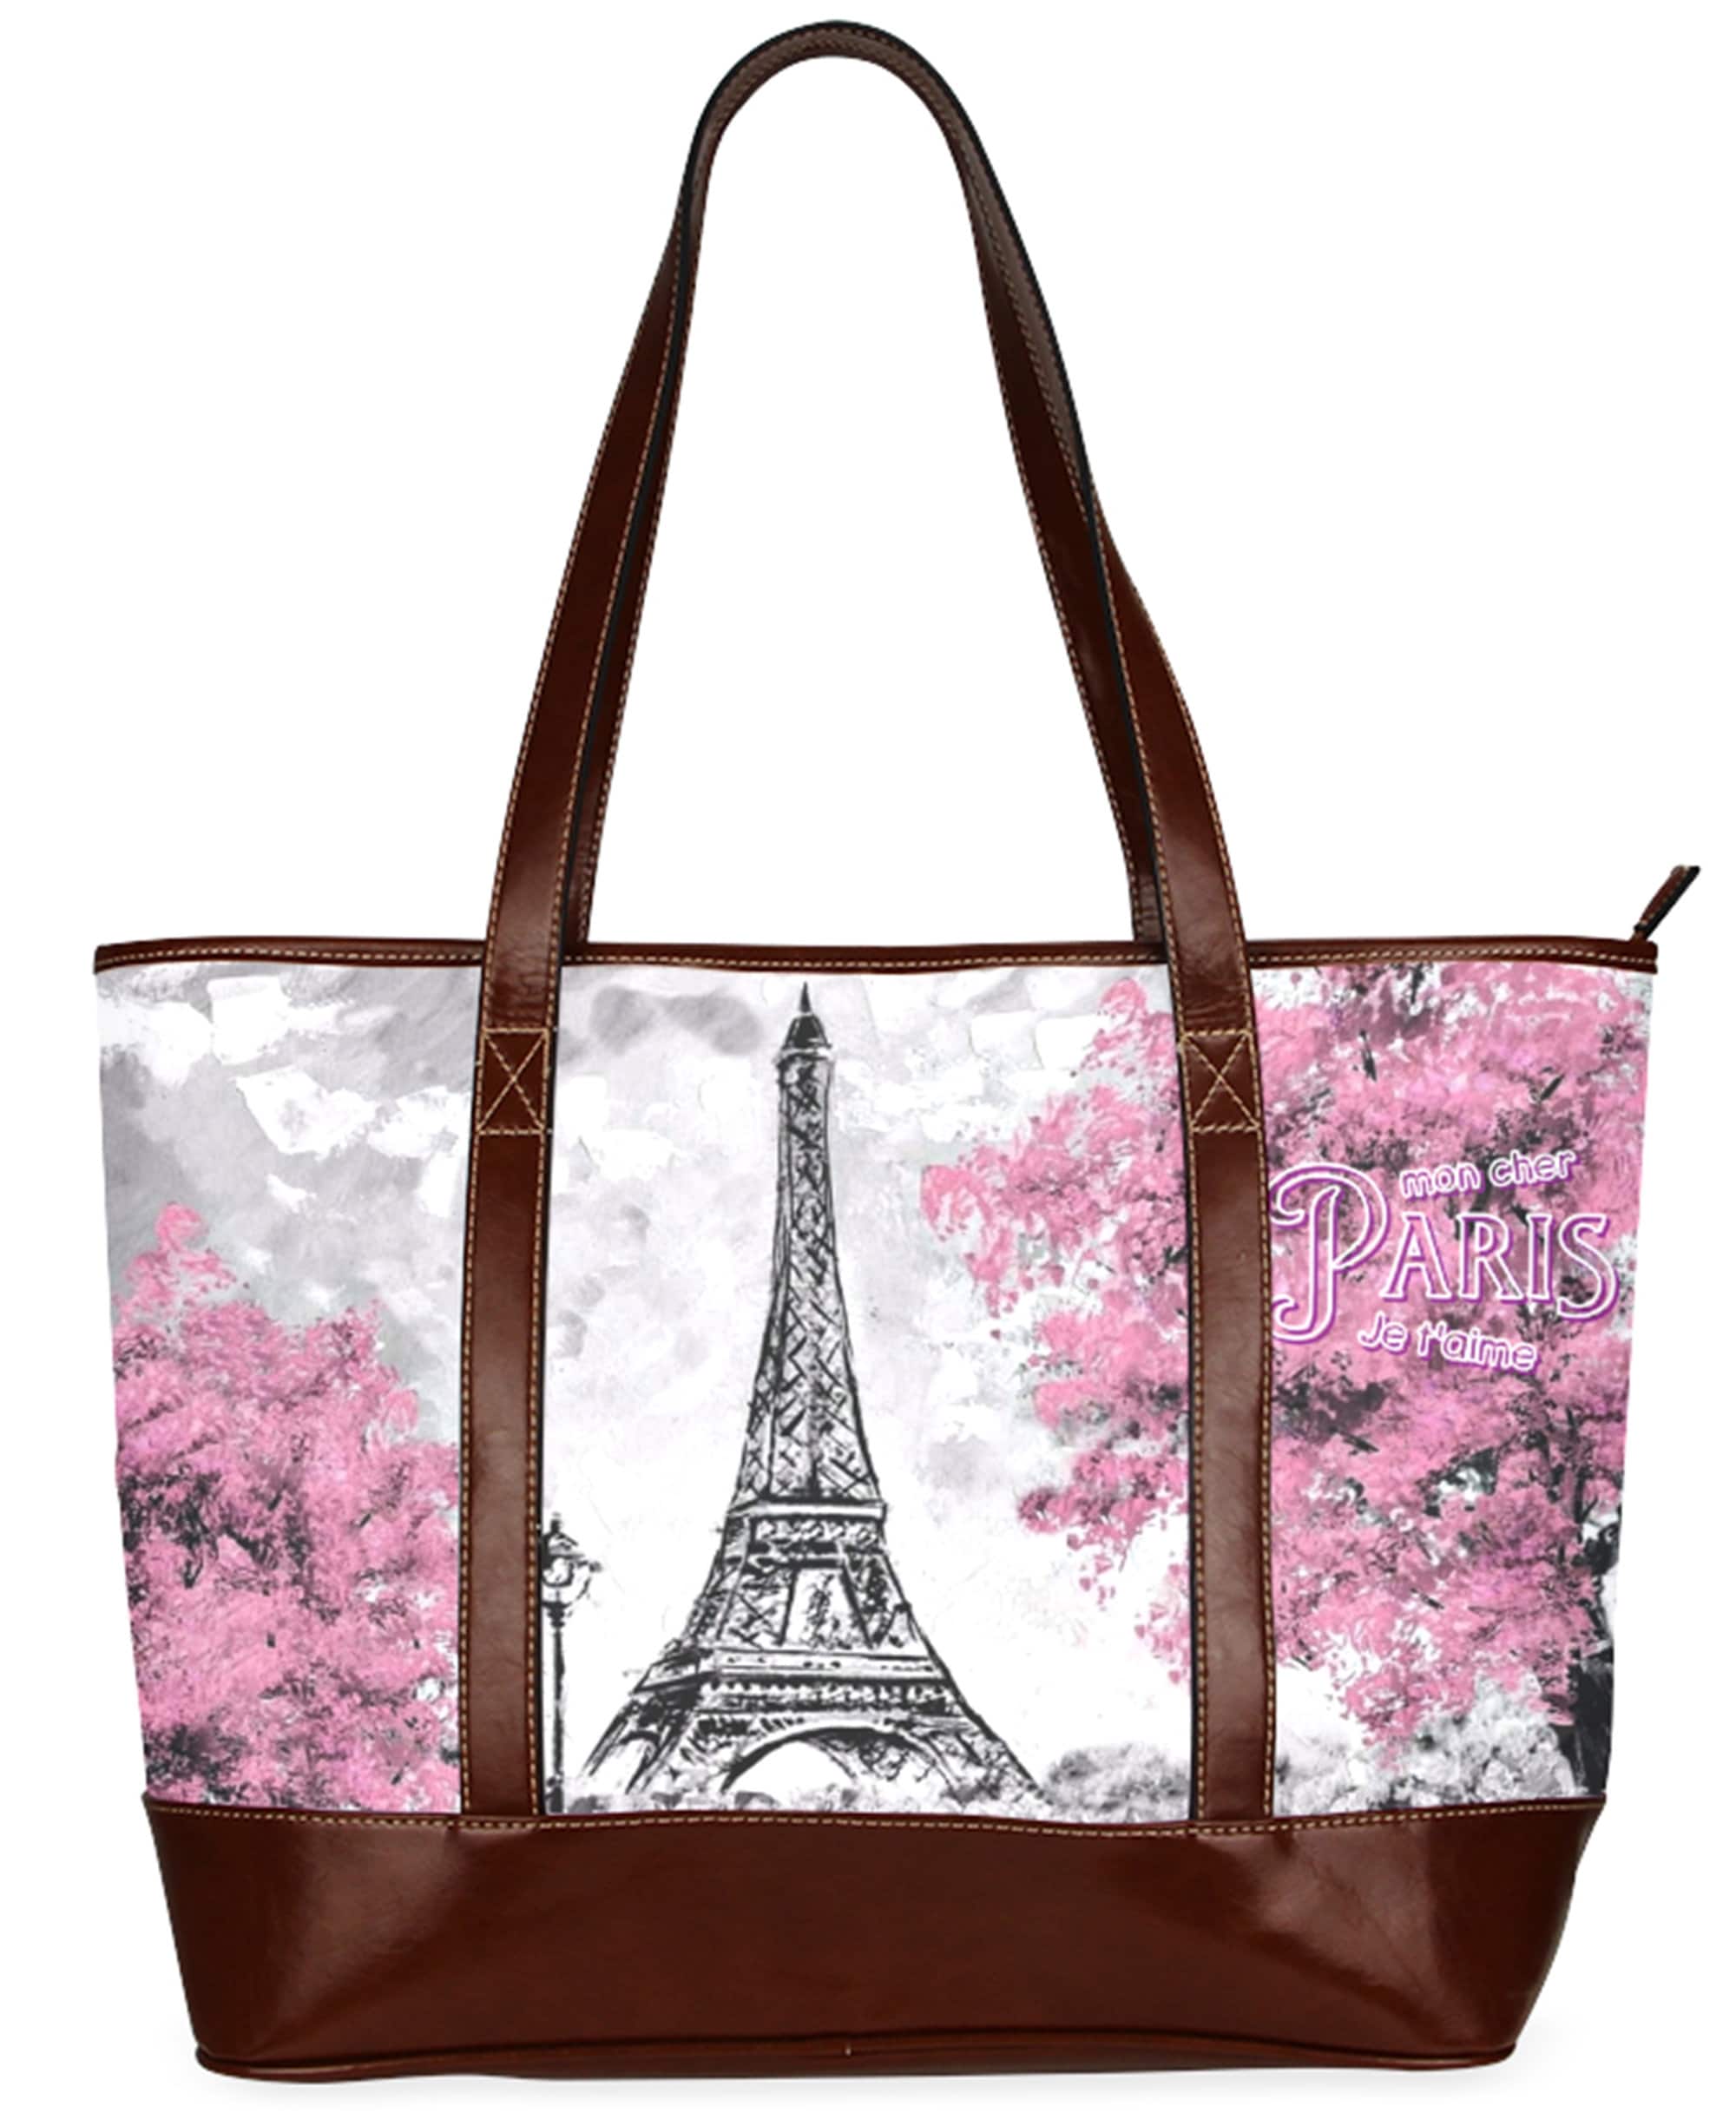 Tote Bags Oversize I Love Paris Paris Theme Love | Etsy